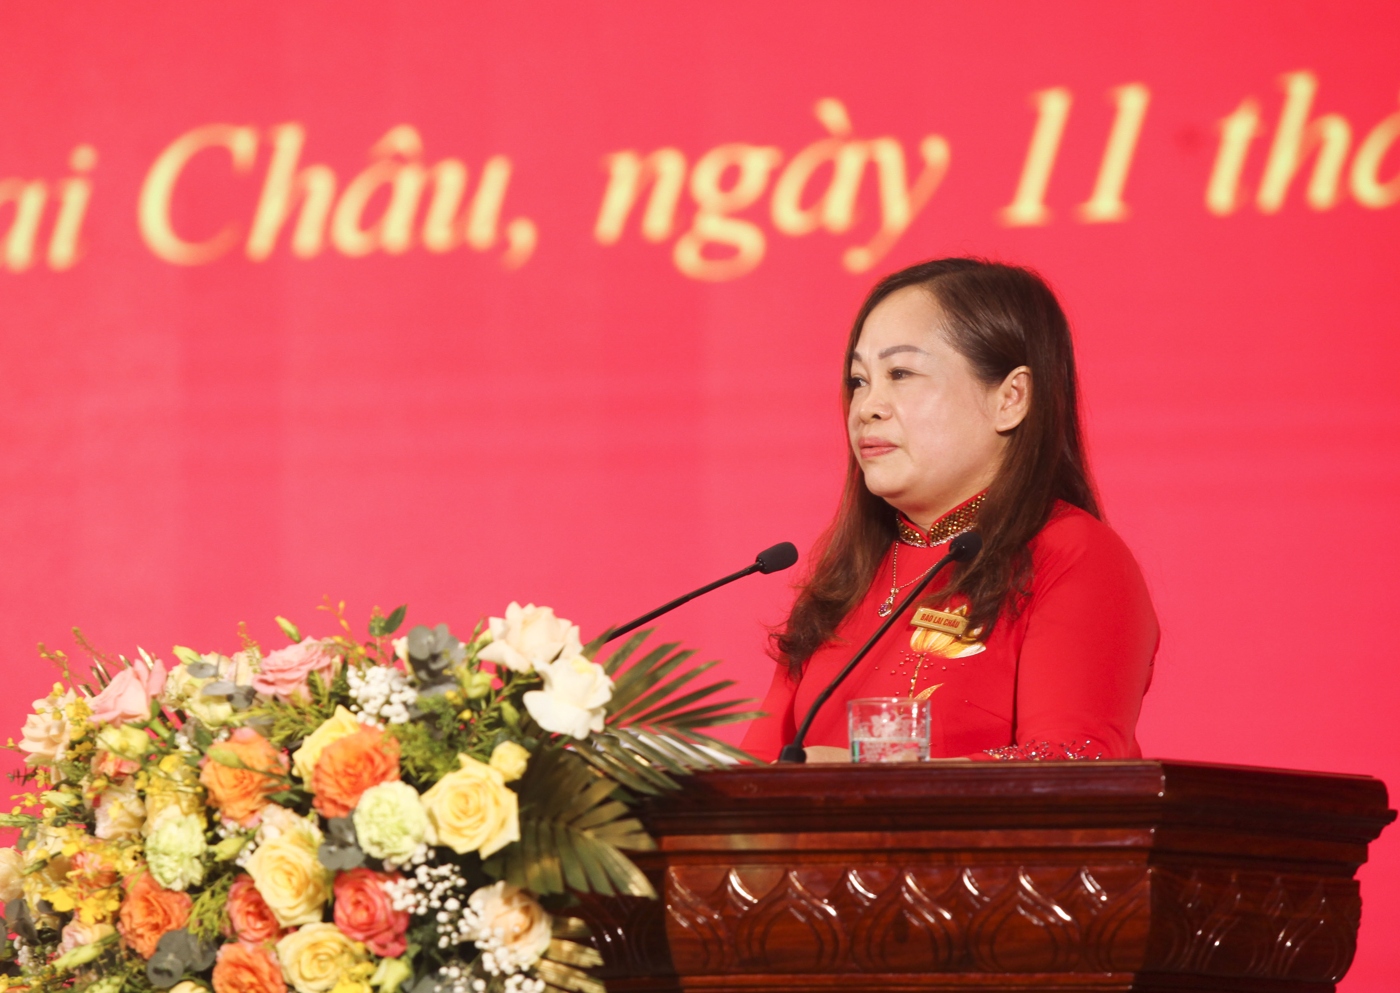 Đồng chí Vũ Thu Hương - Phó Tổng Biên tập Báo Lai Châu điều hành lễ kỷ niệm.

